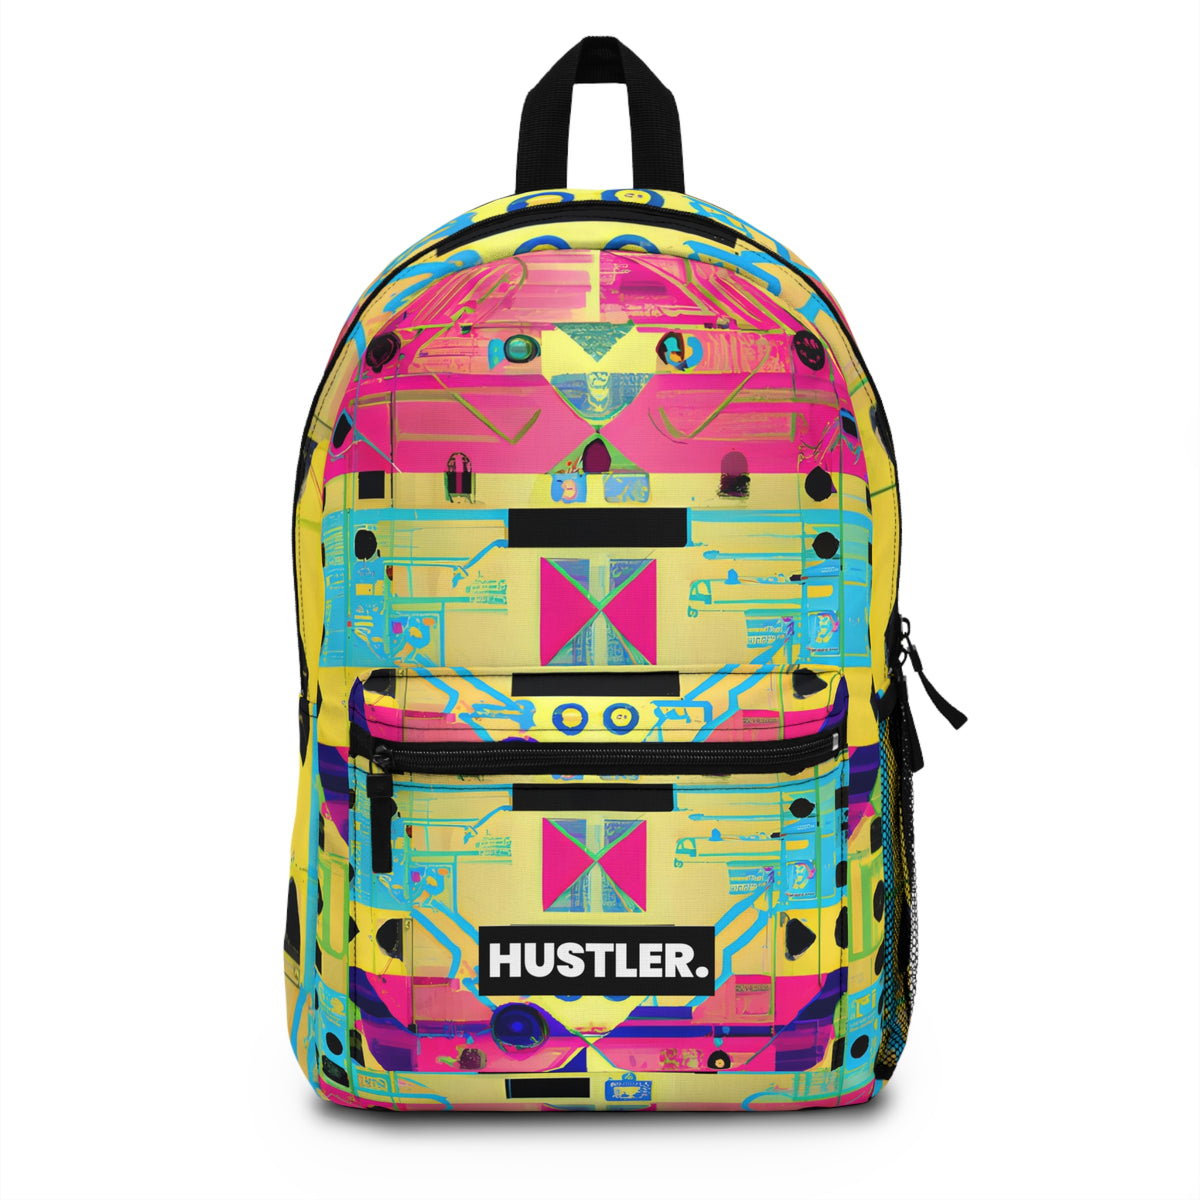 Starraceful - Hustler Backpack